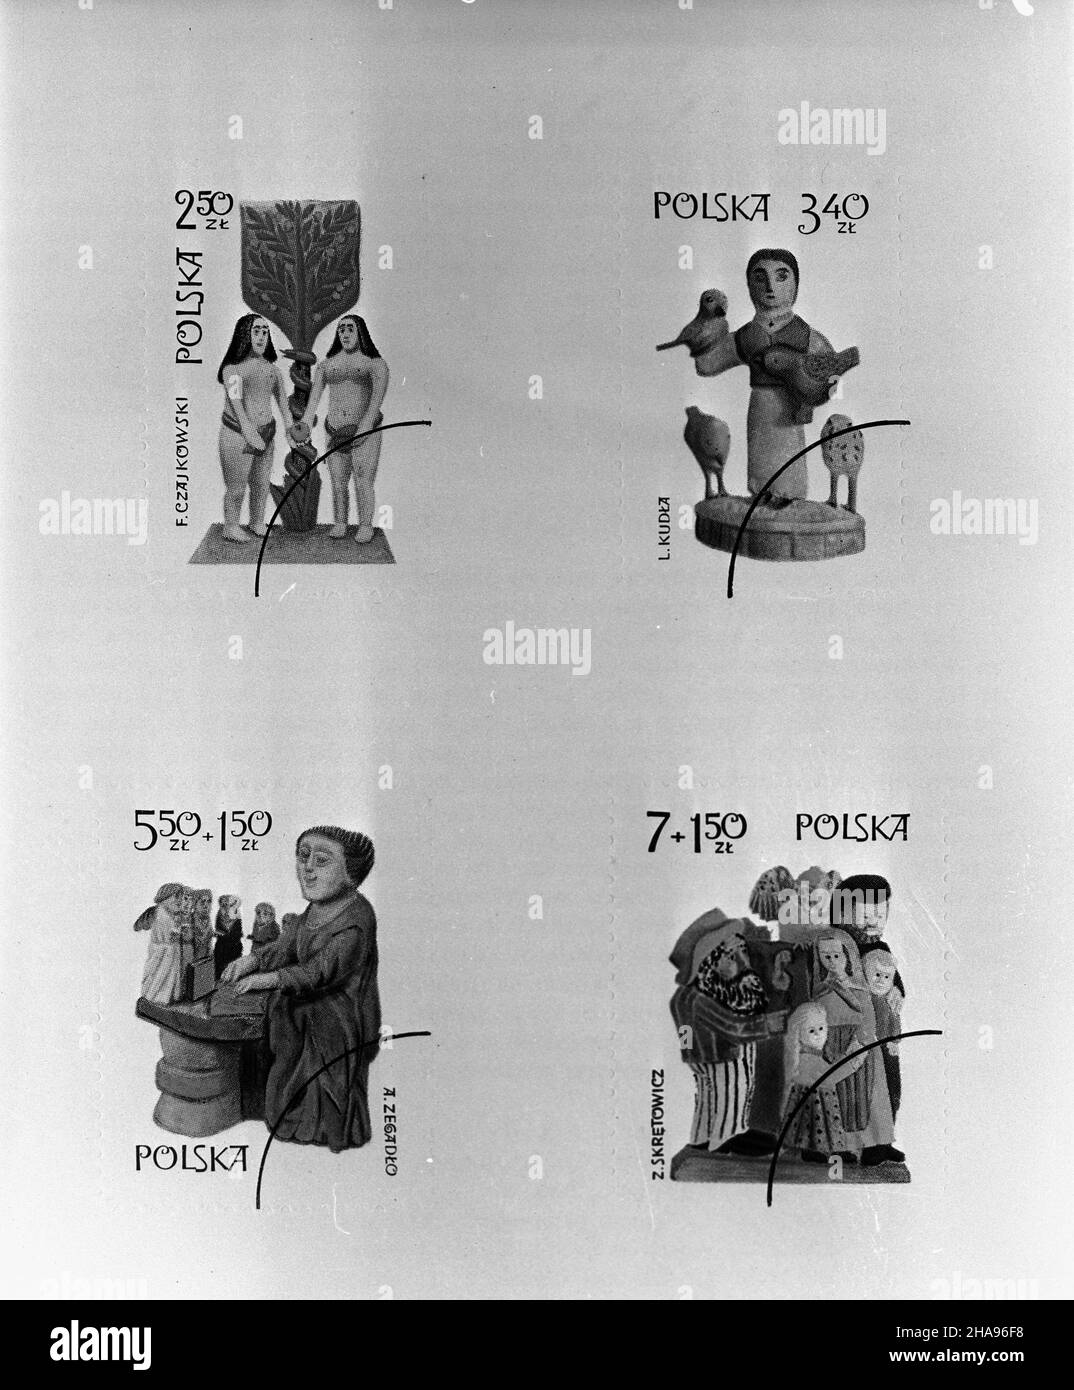 Polska, 1969-11-13. Seria znaczków Poczty Polskiej z 1969 r. pt. Twórcy rzeŸby ludowej zaprojektowanych przez S. Ma³eckiego. Seria sk³ada³a siê z czterech znaczków o wartoœciach 2,50z³, 3,40z³, 5,50+1,50z³ i 7+1,50z³.  mta  PAP/Reprodukcja      Poland, Nov. 12, 1969. A series of Polish Post stamps issued in 1969 entitled 'The Polish Peasant Sculptors' and designed by S. Malecki. The series was made up of four stamps of the value of 2,50 PLN, 3.40 PLN, 5.50 plus 1.50 PLN and 7plus1.50 PLN.   mta  PAP/Reproduction Stock Photo